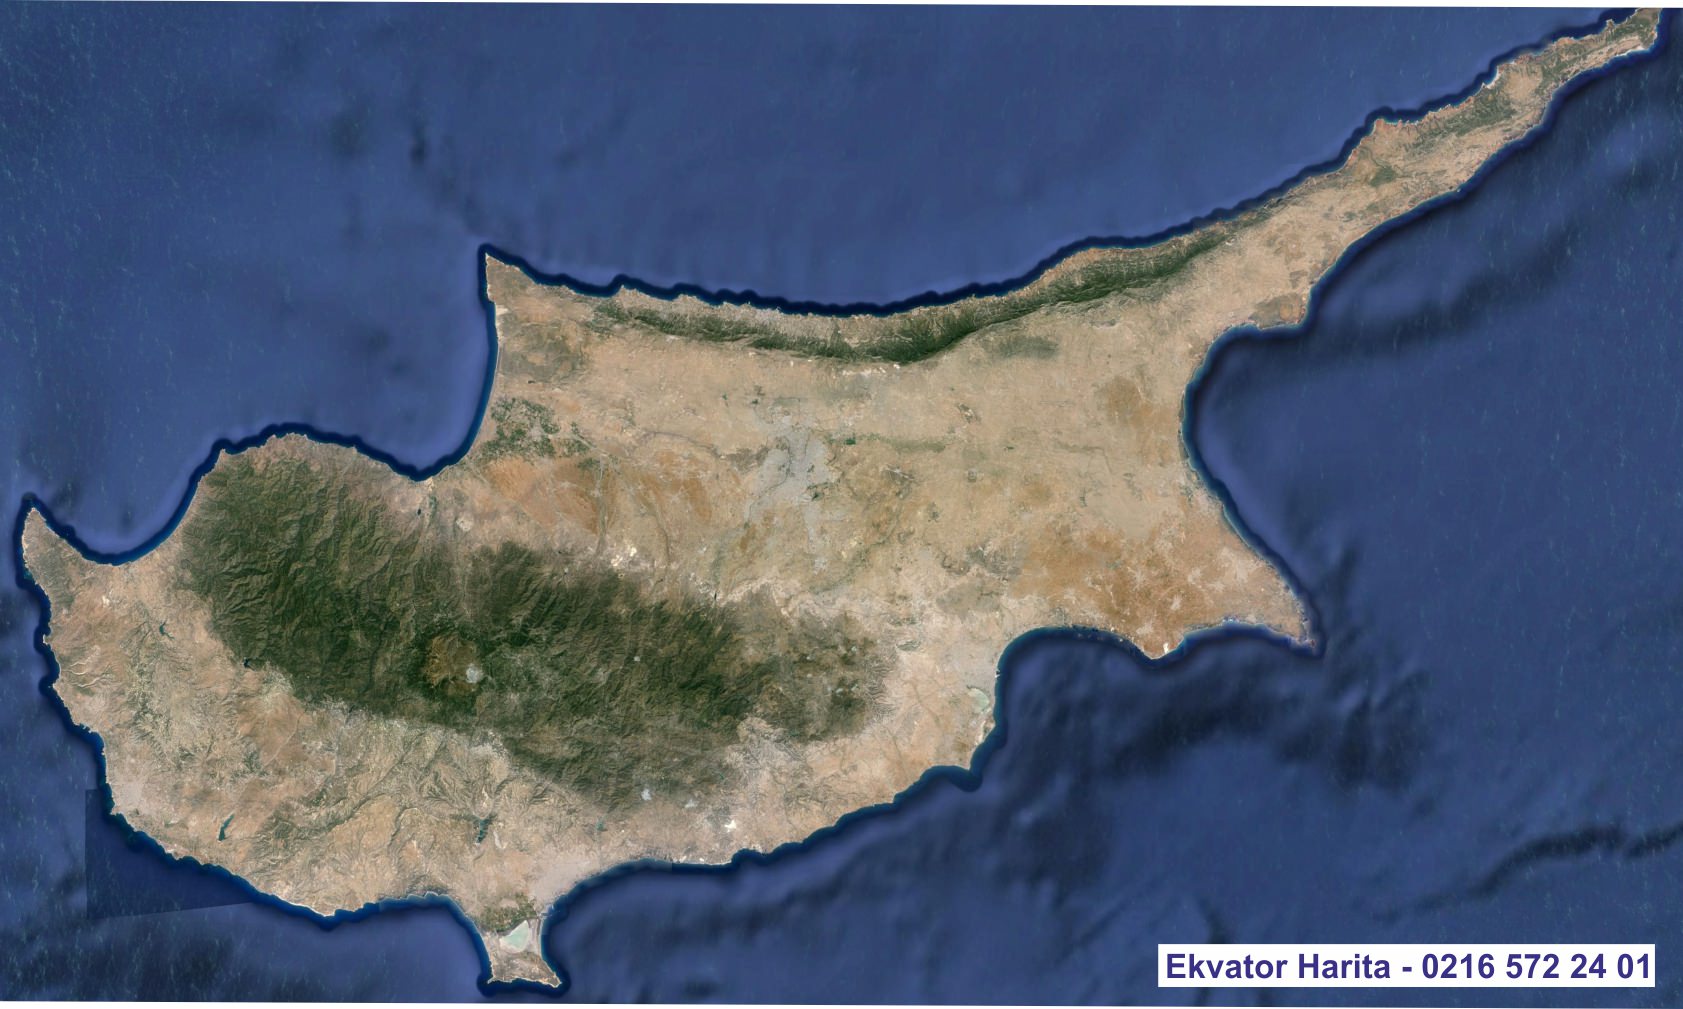 Kıbrıs Uydu Haritası Örnek Fotoğrafı